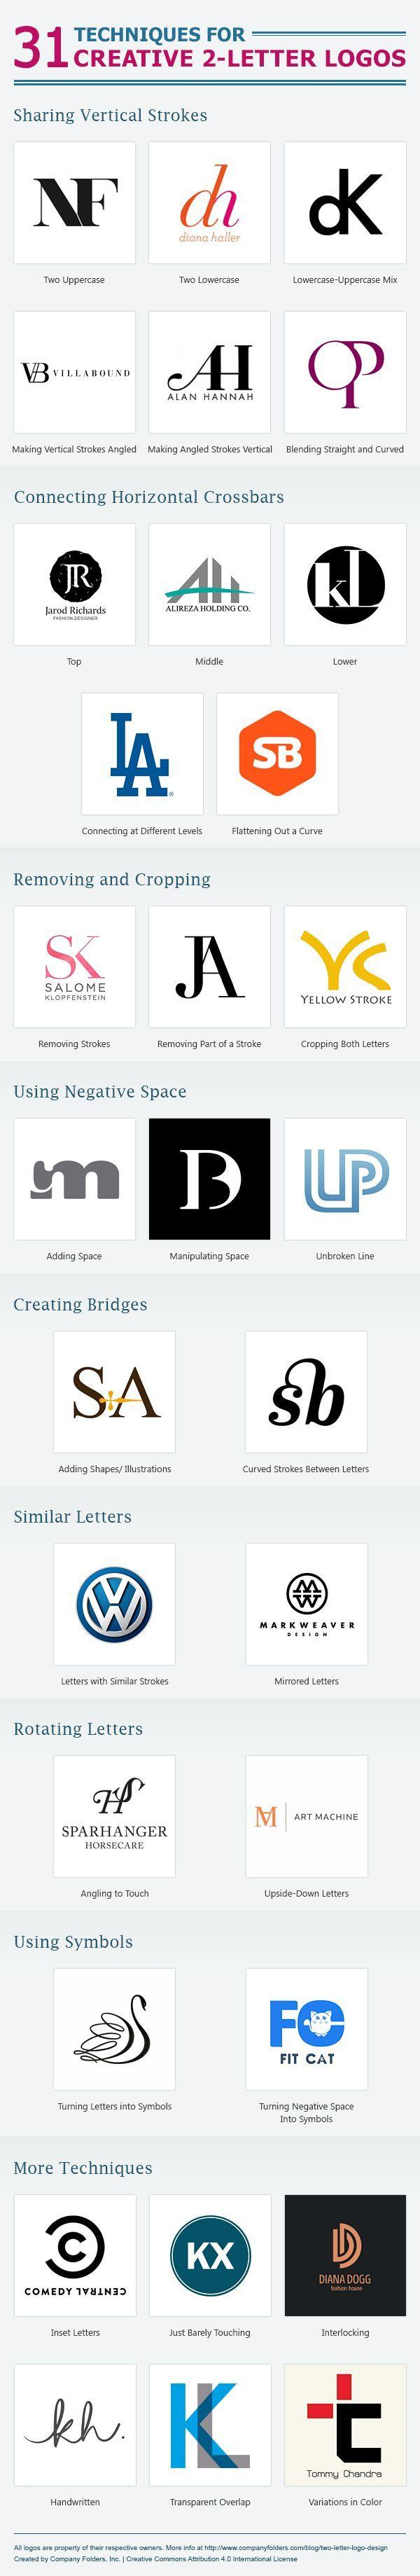 Just Two Letters Company Logo - Técnicas para criar um logo com apenas duas letras. Logo Design